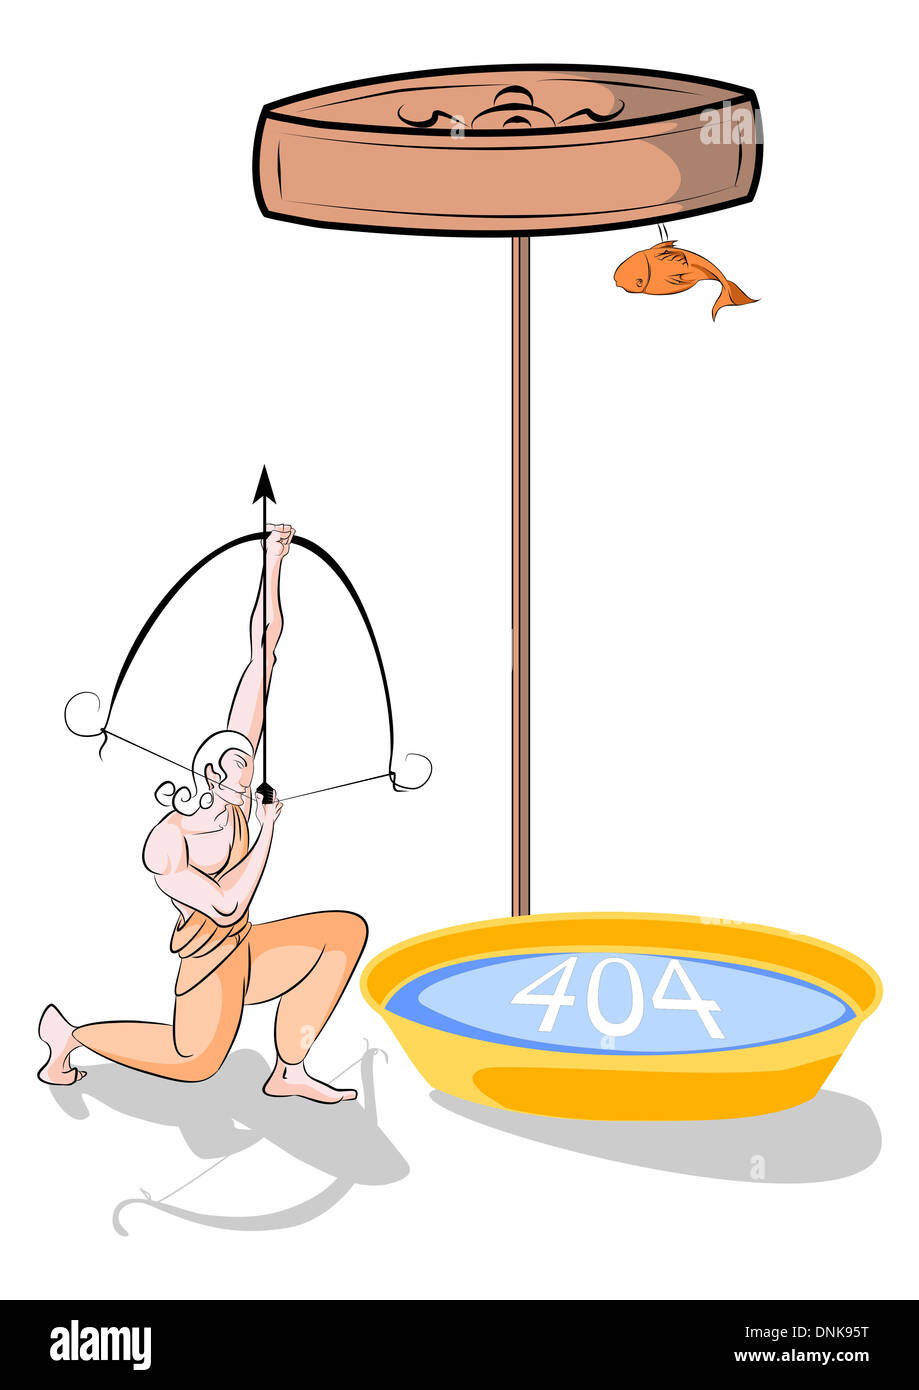 Représentation illustrative d'Arjuna vise pour l'oeil de poisson Banque D'Images